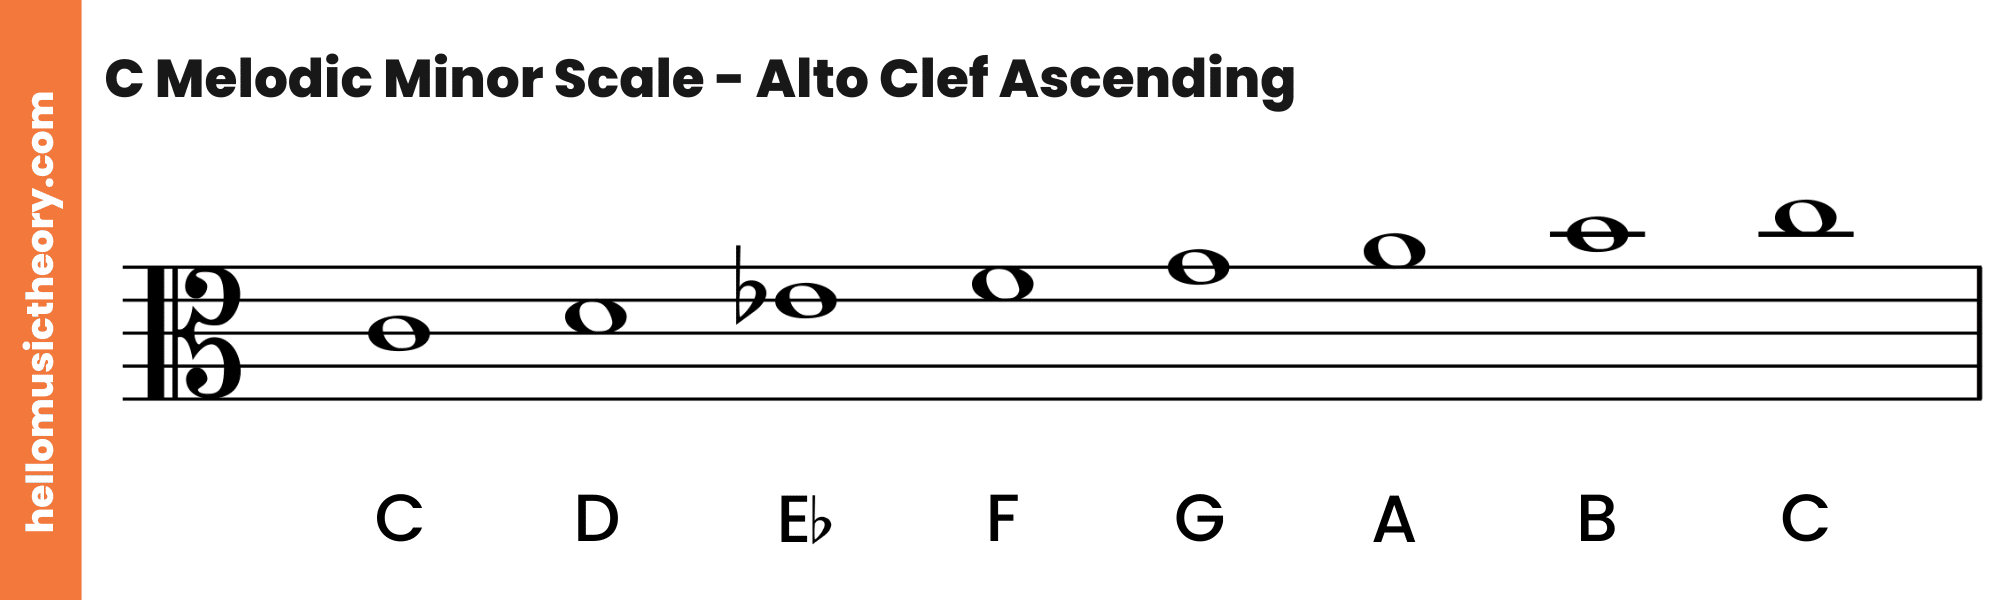 C Melodic Minor Scale Alto Clef Ascending